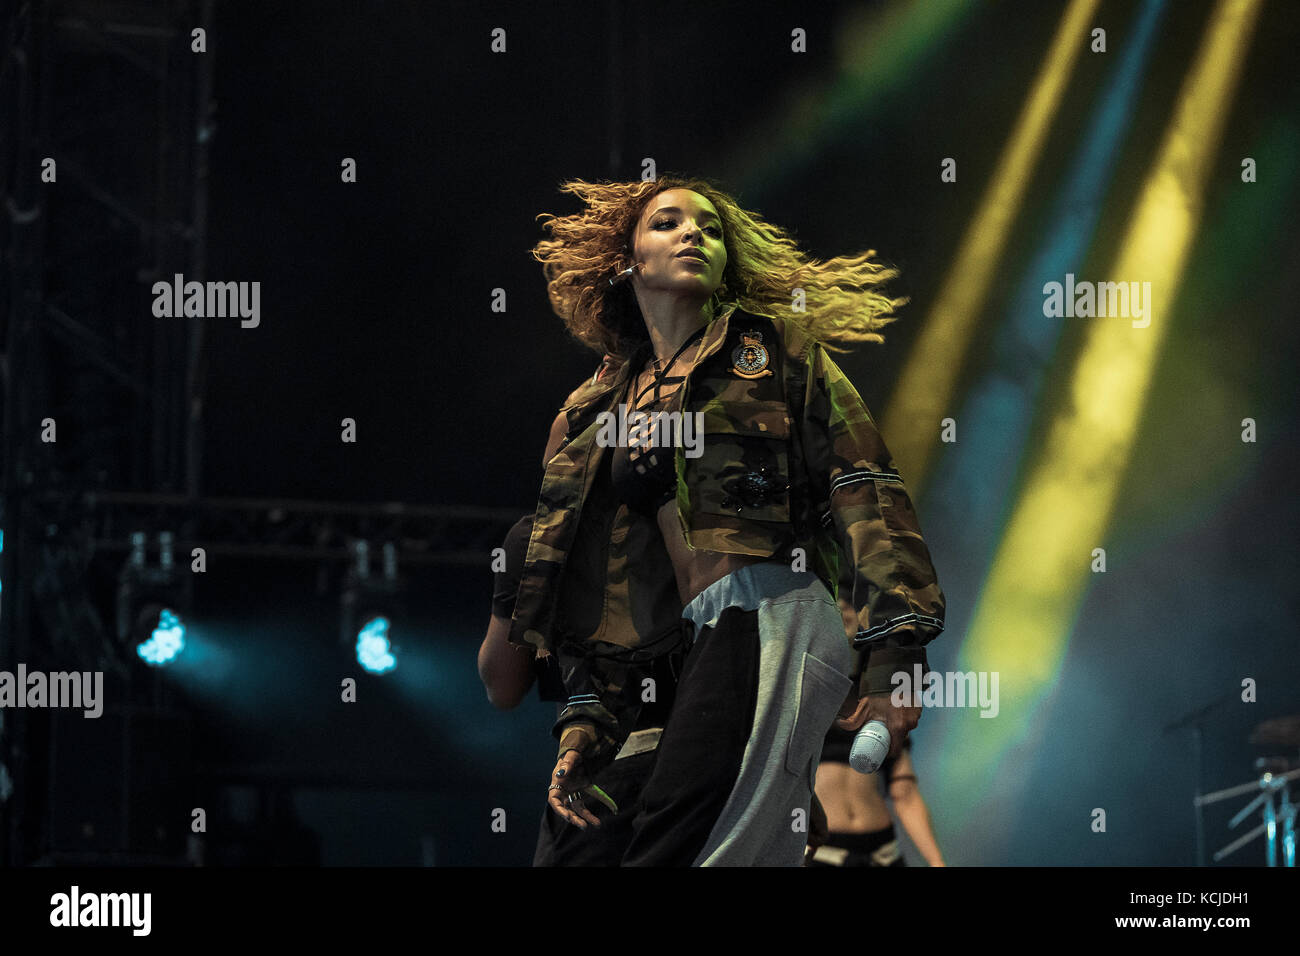 Dinamarca, Roskilde – 30 de junio de 2017. El cantante, compositor y bailarín estadounidense Tinashe realiza un concierto en directo durante el festival de música danés Roskilde Festival 2017. Foto de stock